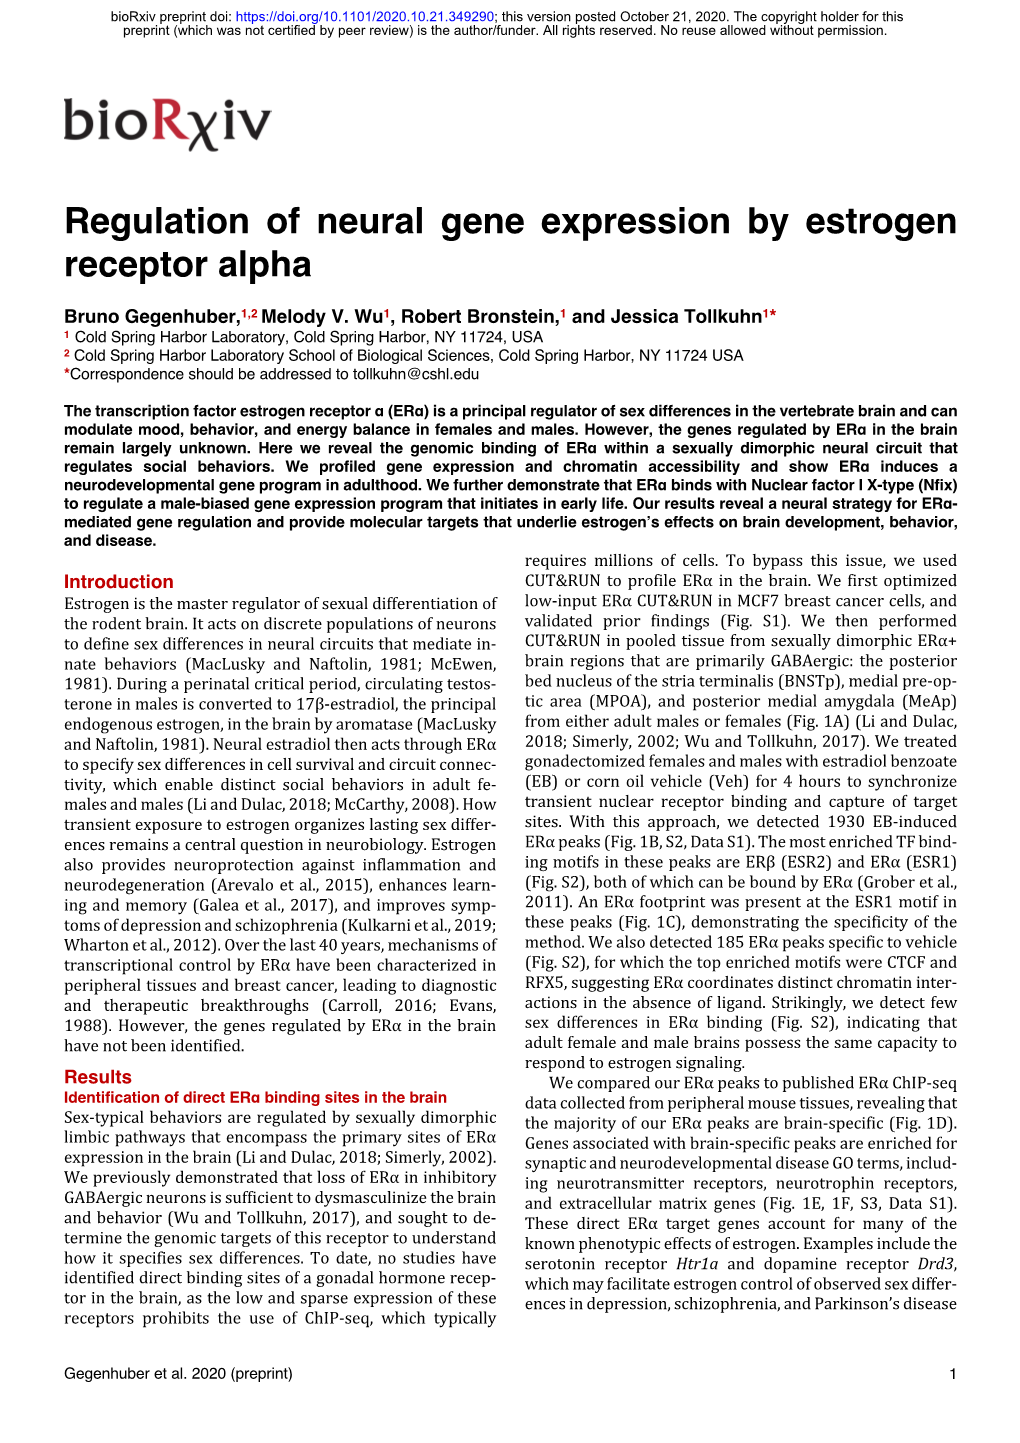 Regulation of Neural Gene Expression by Estrogen Receptor Alpha